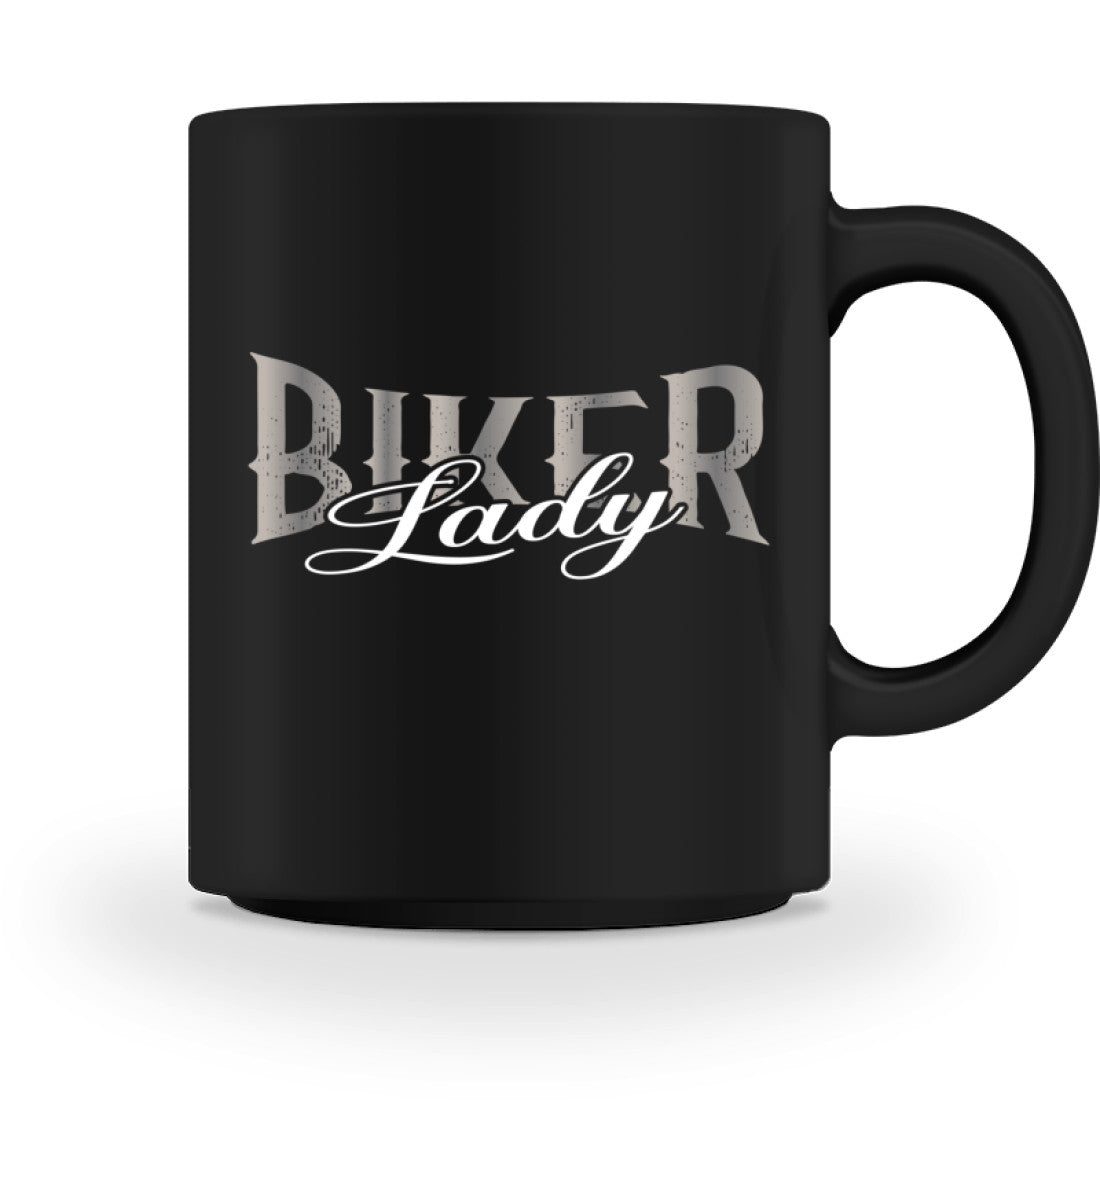 Eine Tasse für Motorradfahrerinnen von Wingbikers, mit dem beidseitigen Aufdruck, Biker Lady, in schwarz.